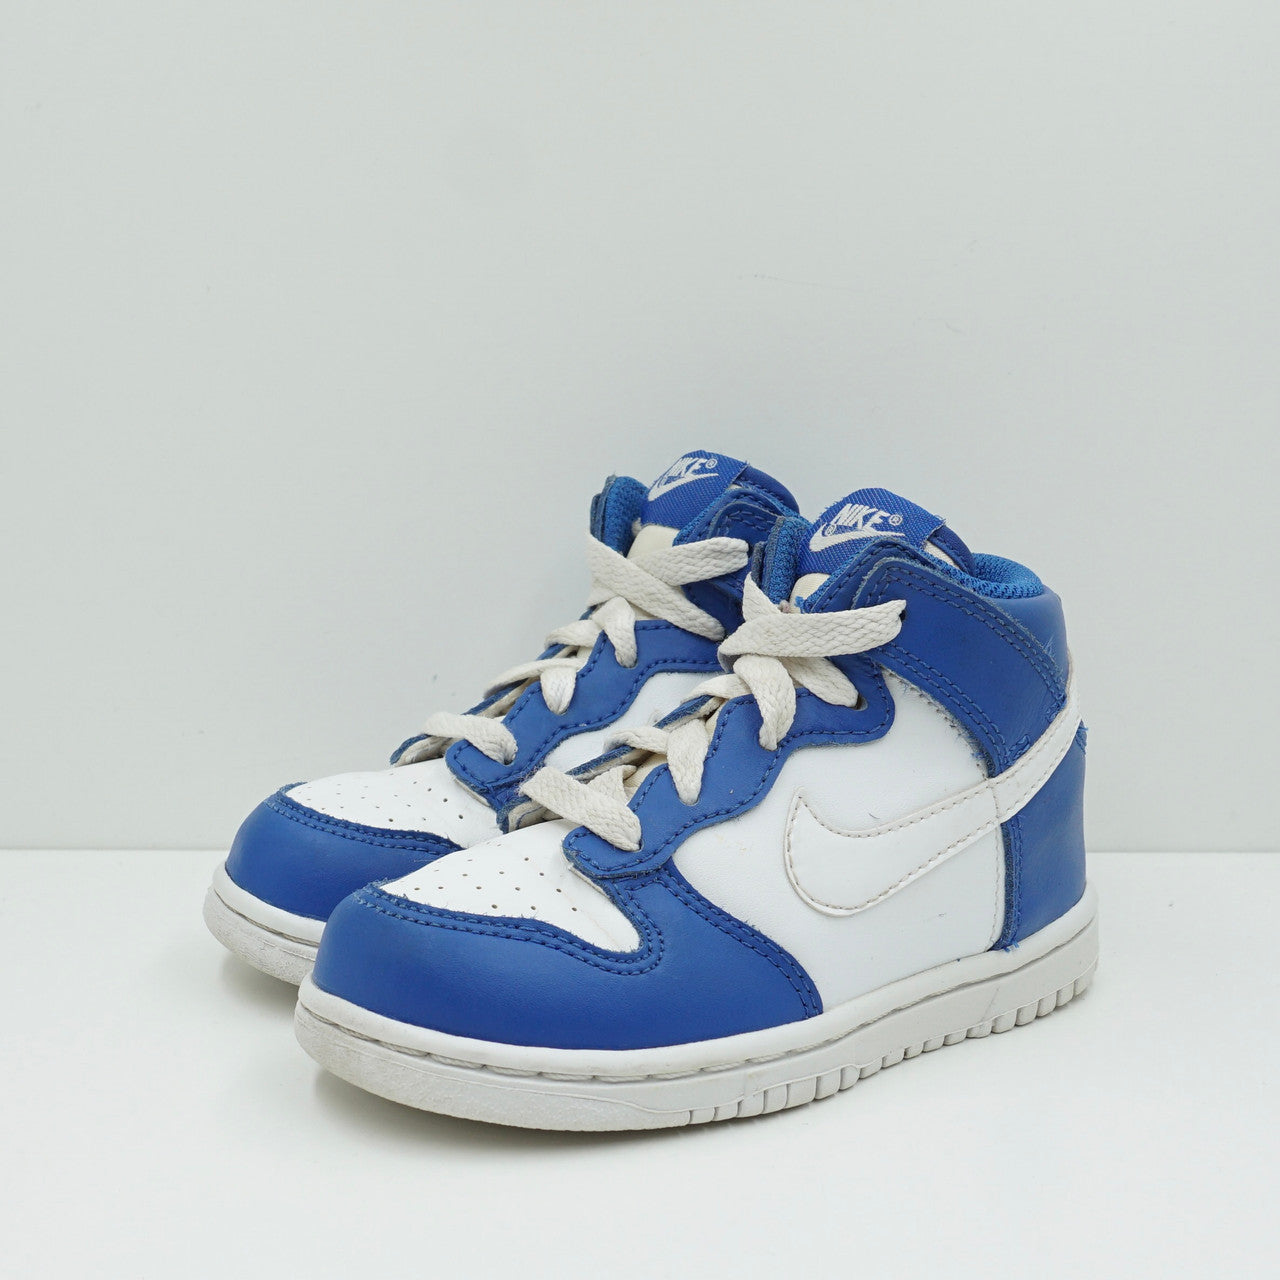 Nike Dunk High Blue White (TD)